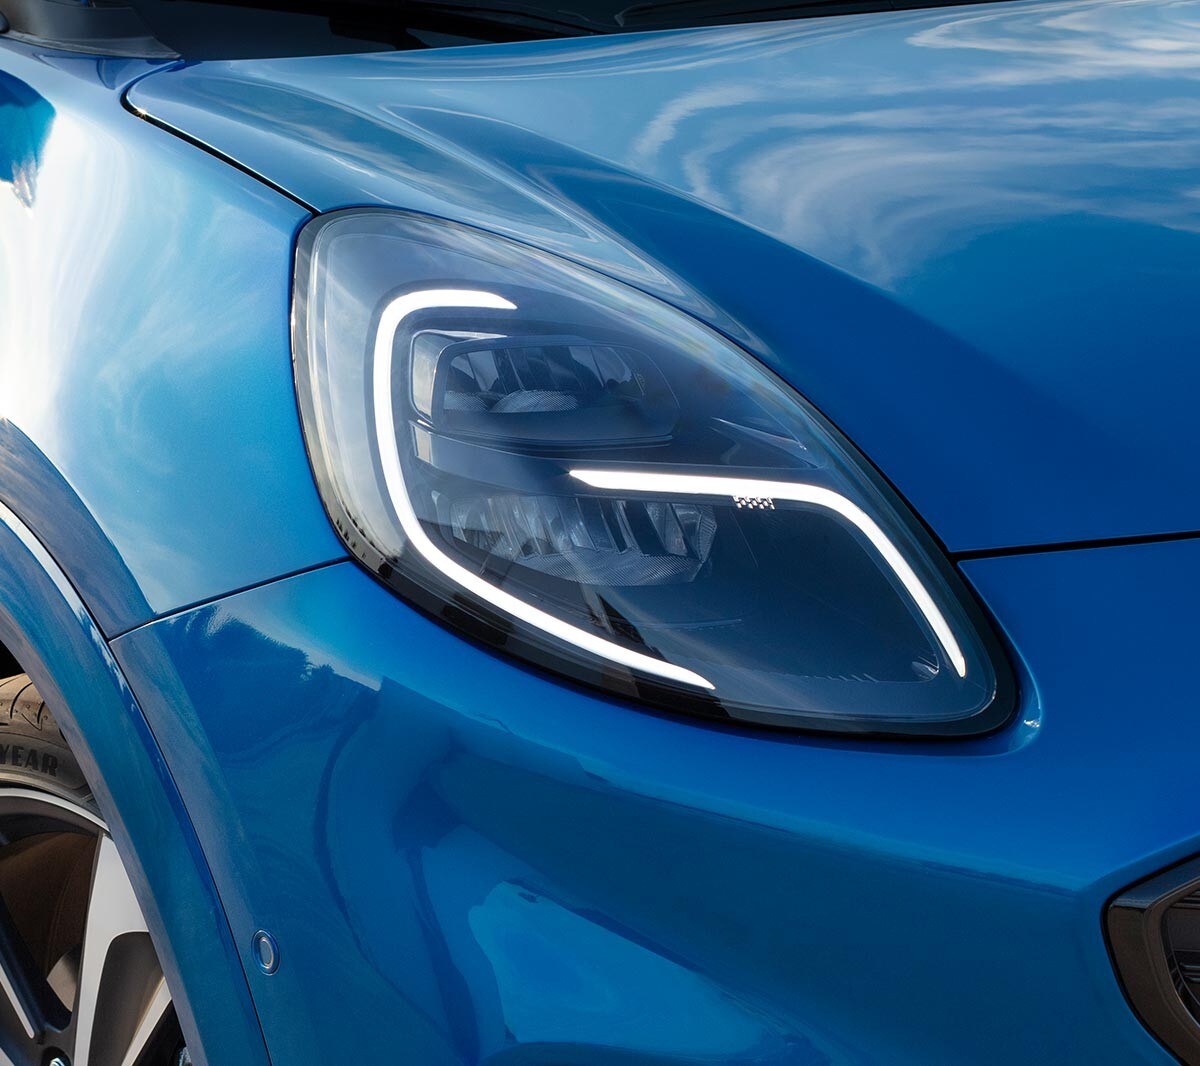 Ford Puma in blau, Detailansicht des Tagfahrlichts.